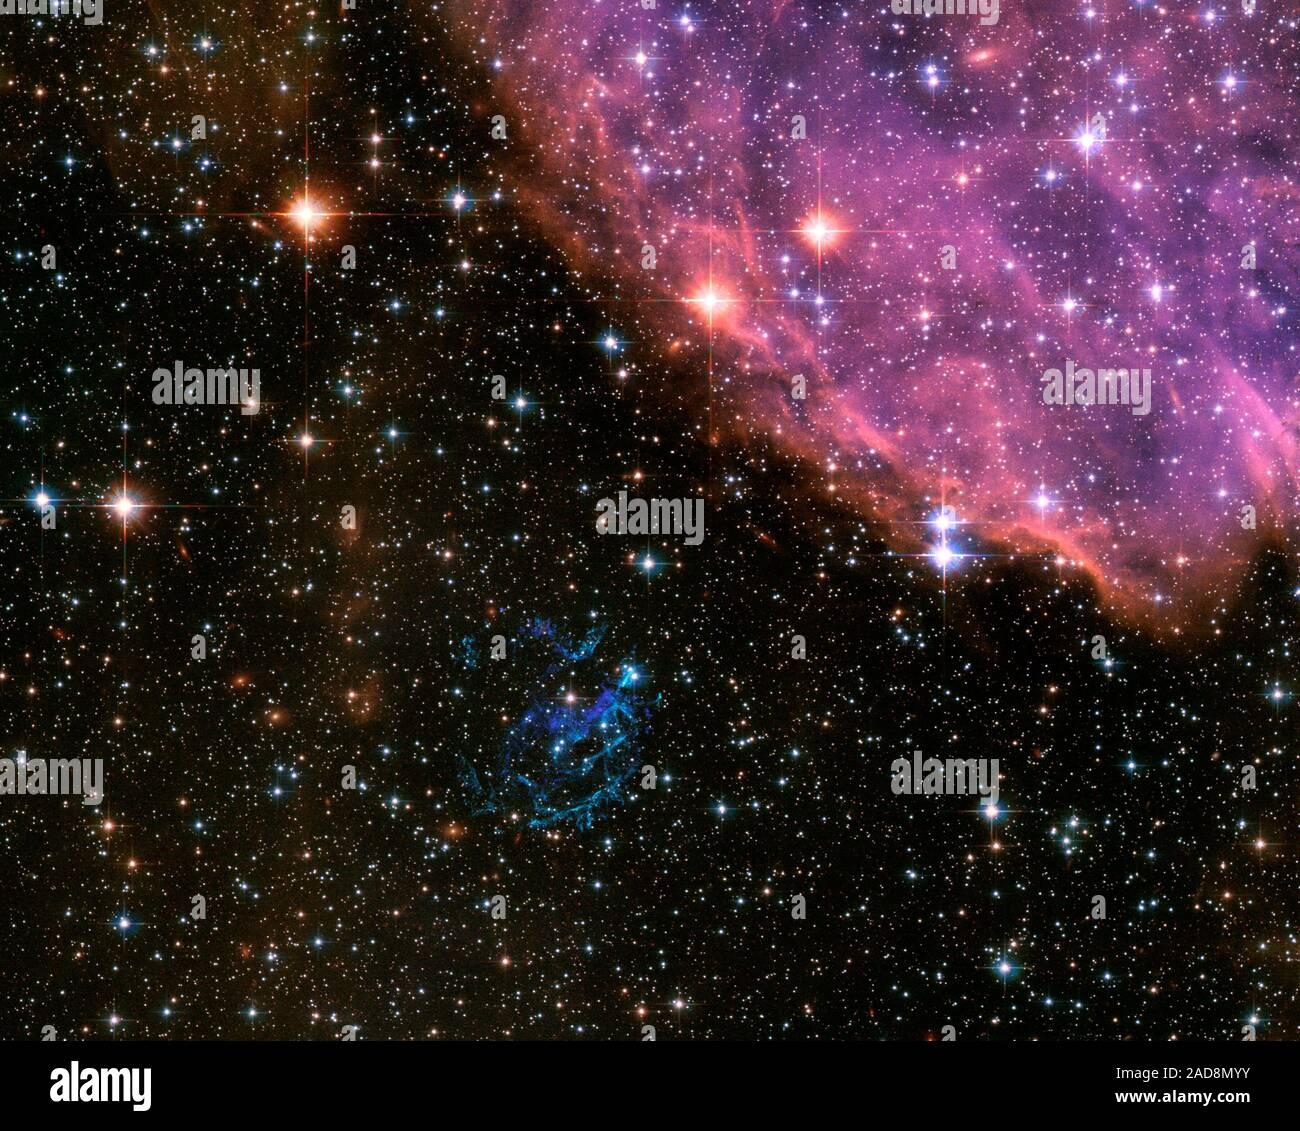 Con reminiscencias de un EE.UU. Julio 4 Celebración del Día de la independencia, aquí está una imagen del Telescopio Espacial Hubble de la NASA de una explosión cósmica que es muy similar a la de los fuegos artificiales de la tierra. En la galaxia vecina, la pequeña Nube de Magallanes, una estrella masiva ha estallado como una supernova y comenzado a disiparse su interior en una espectacular exhibición de coloridos filamentos. Los remanentes de supernova (SNR), conocida como "E0102" para abreviar, es el azul verdoso de escombros shell justo debajo del centro de la imagen del Hubble. Su nombre se deriva de su catalogado de colocación (o coordenadas) en la esfera celeste. Más formalmente conocida Foto de stock